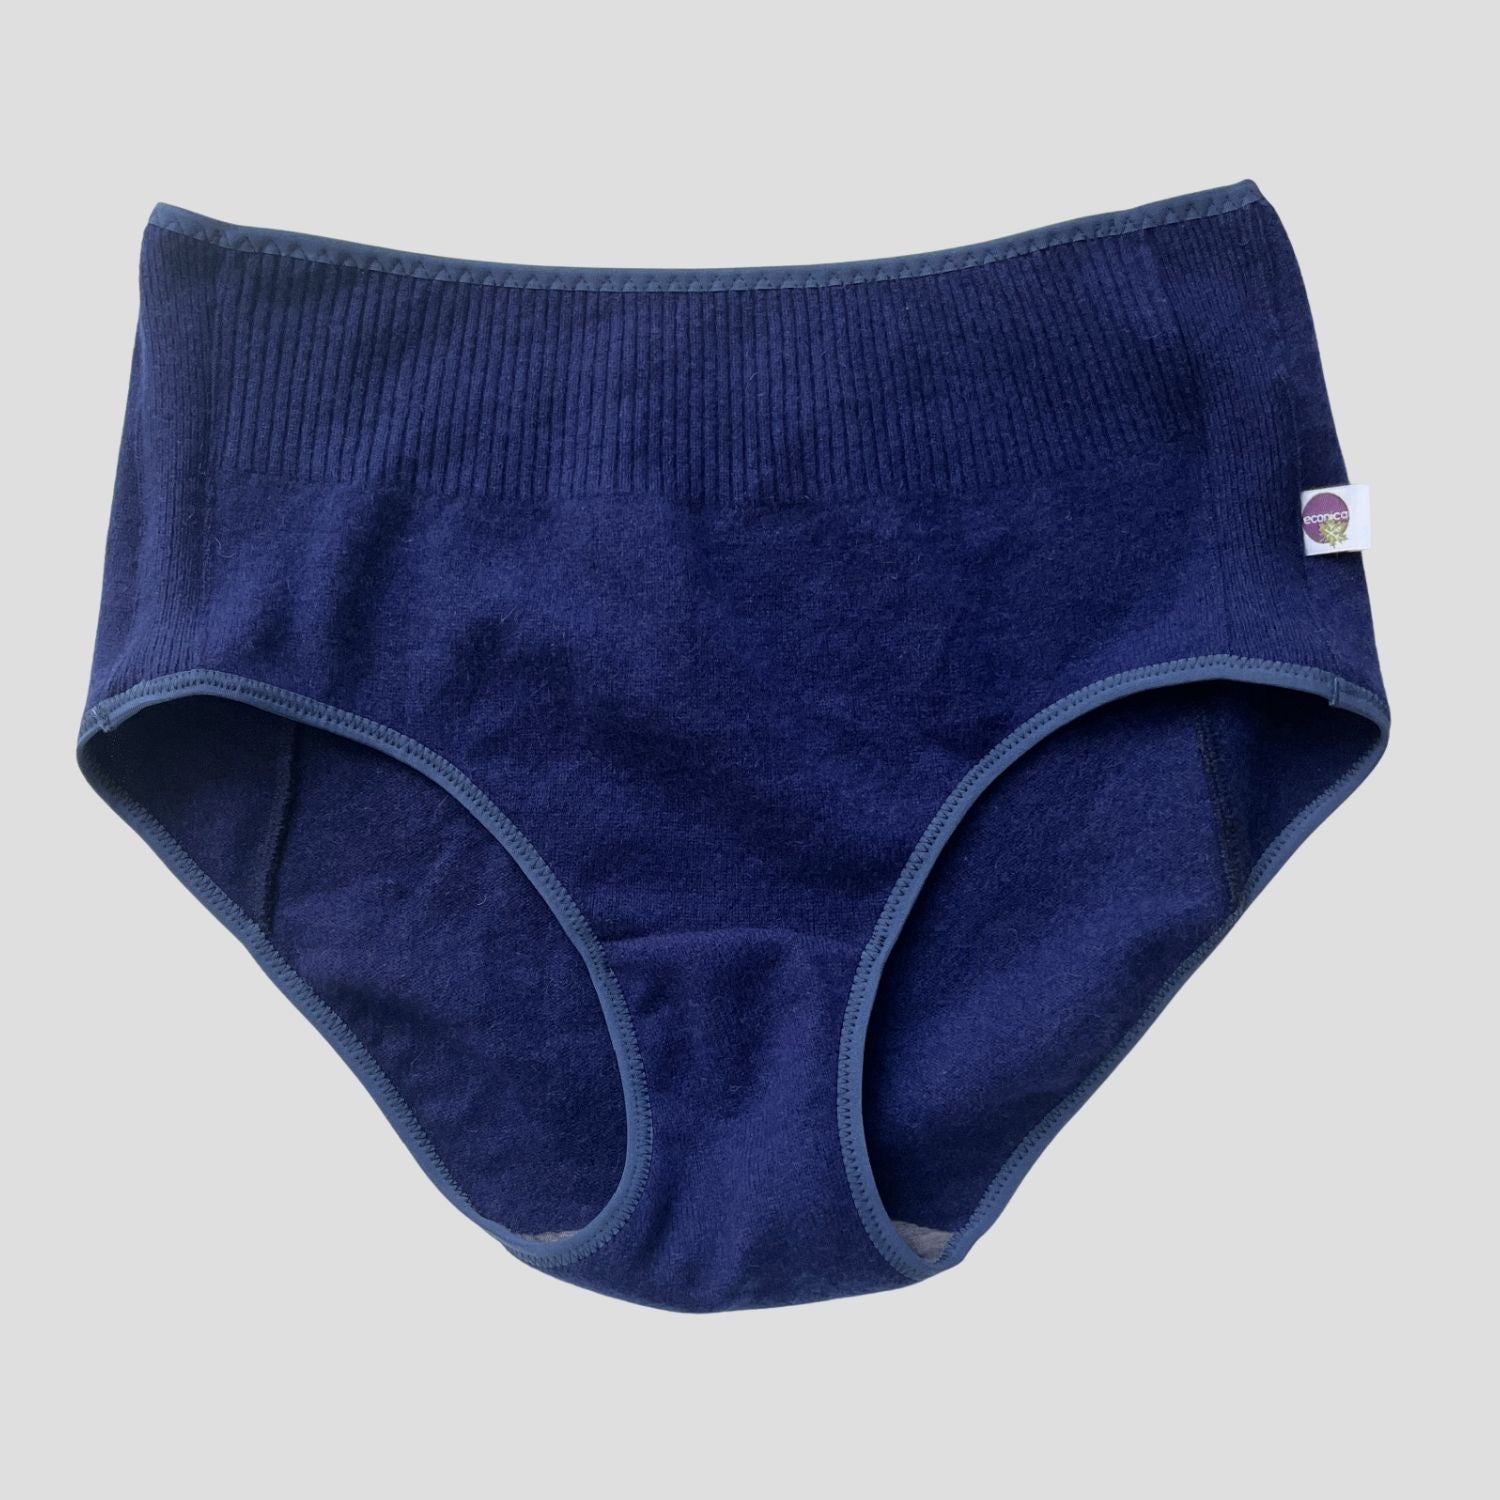 Merino wool underwear brief women's Canada